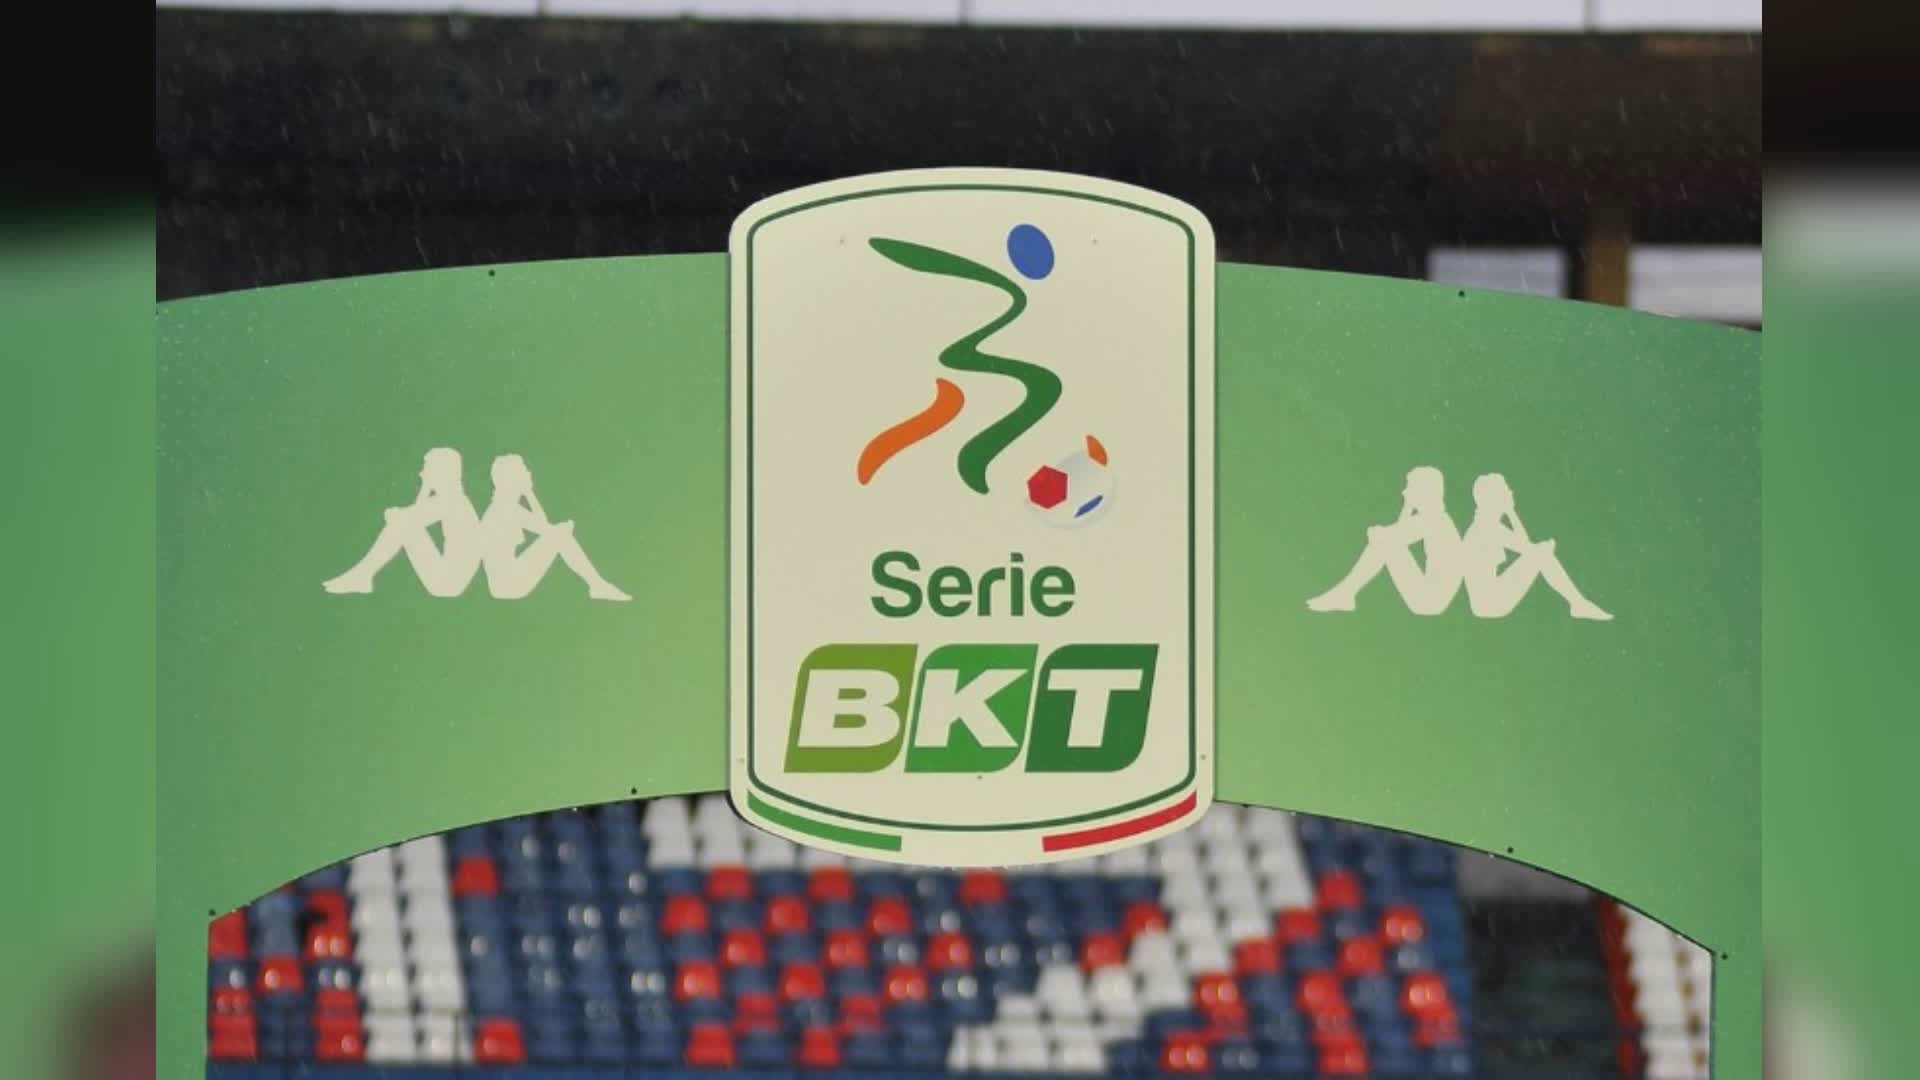 Serie B: Spezia-Sampdoria il 20 aprile alle 16,15, gli altri anticipi e posticipi dalla 34a alla 36a